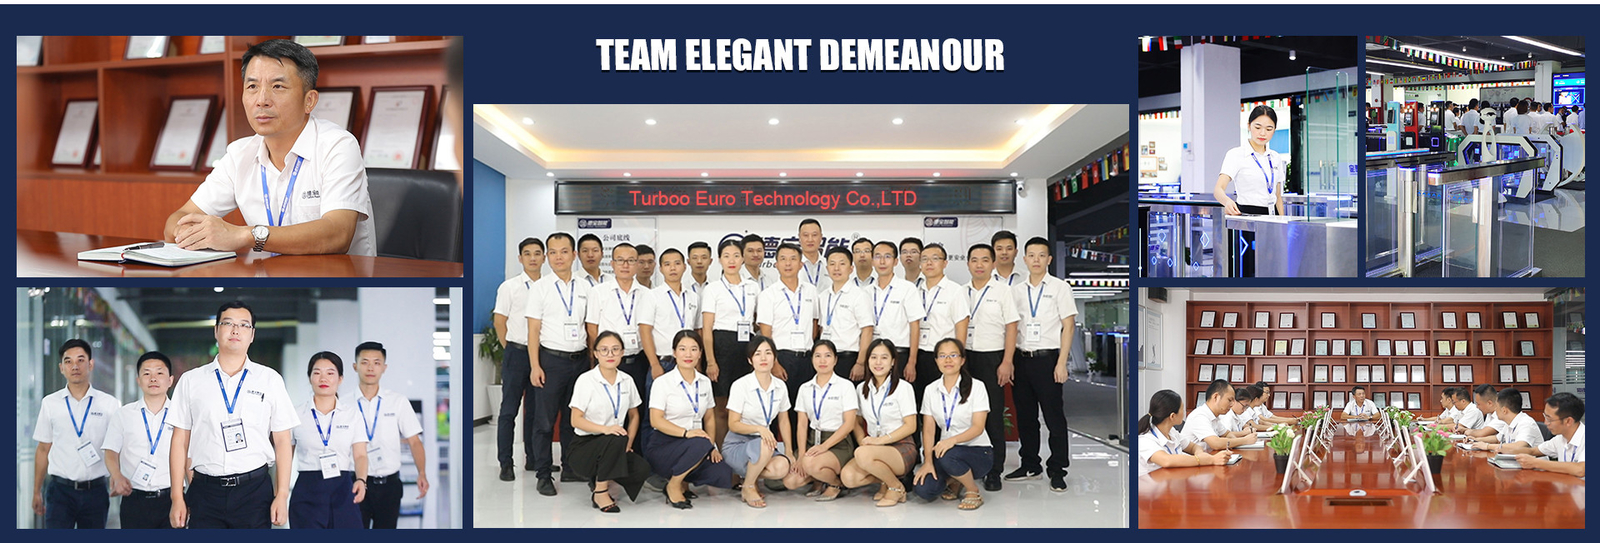 จีน Turboo Euro Technology Co., Ltd. รายละเอียด บริษัท